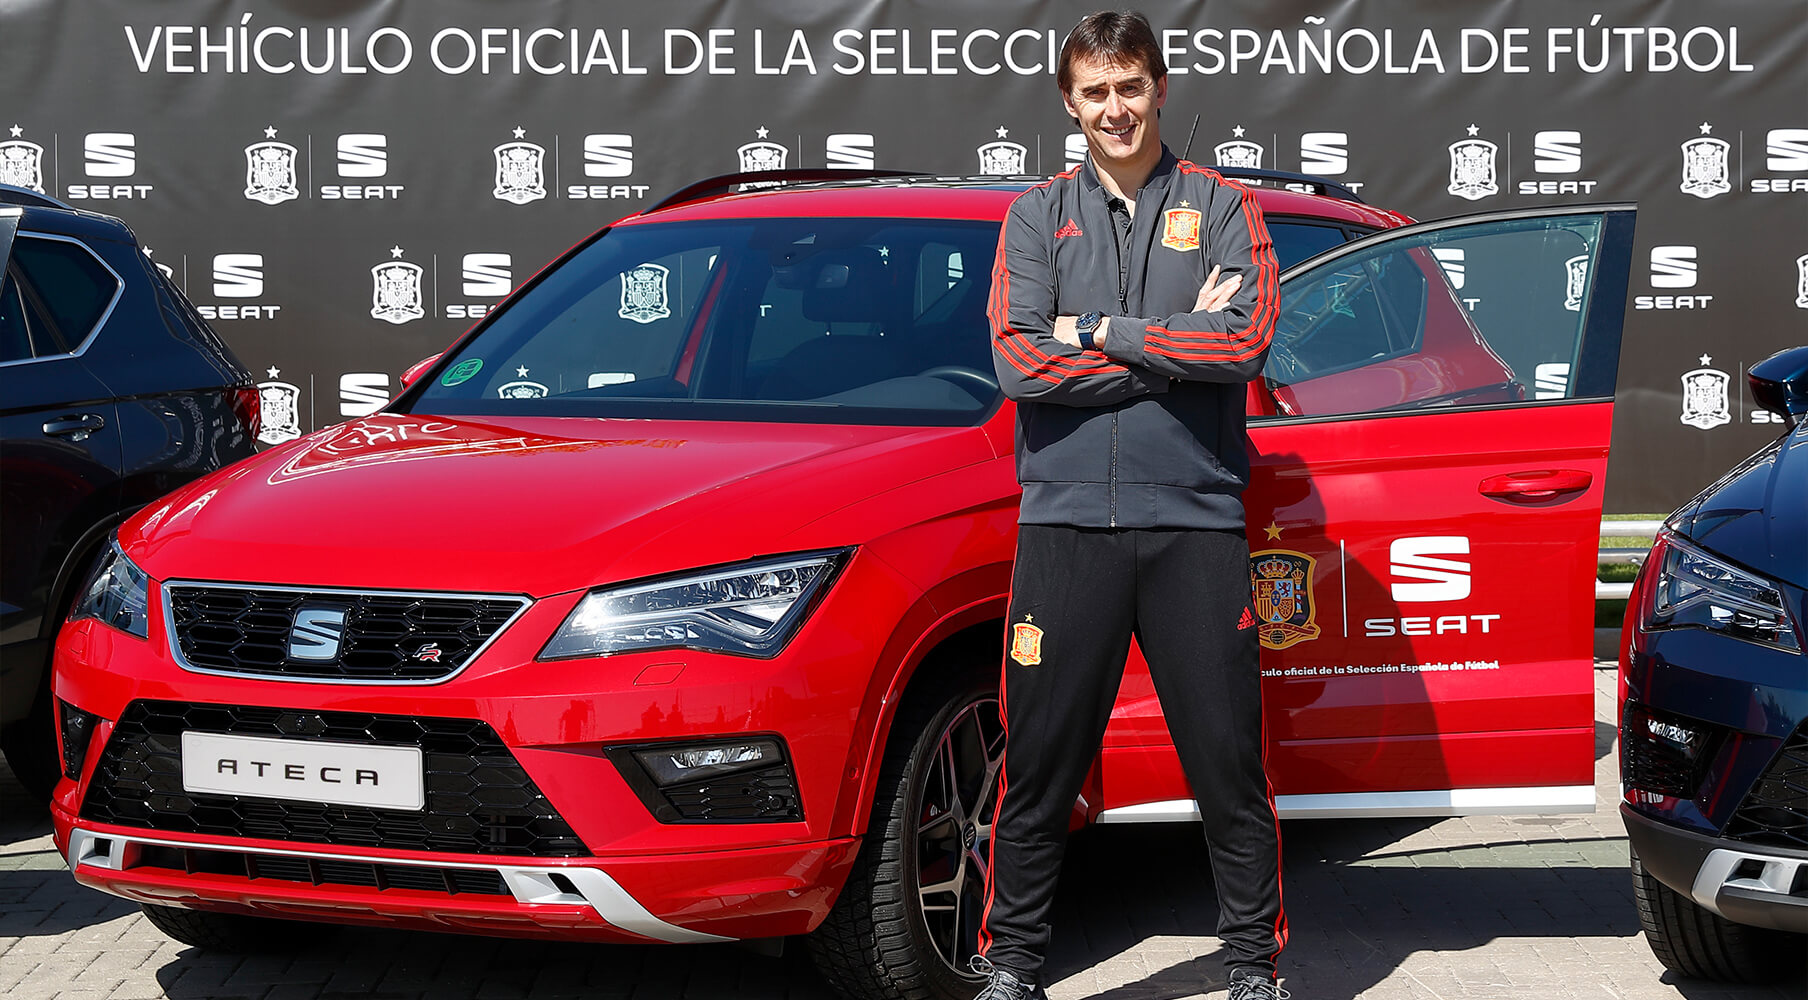 Lopetegui, sélectionneur de l'équipe nationale d'Espagne devant le SUV SEAT Ateca - SEAT Sponsors de l'équipe nationale de football